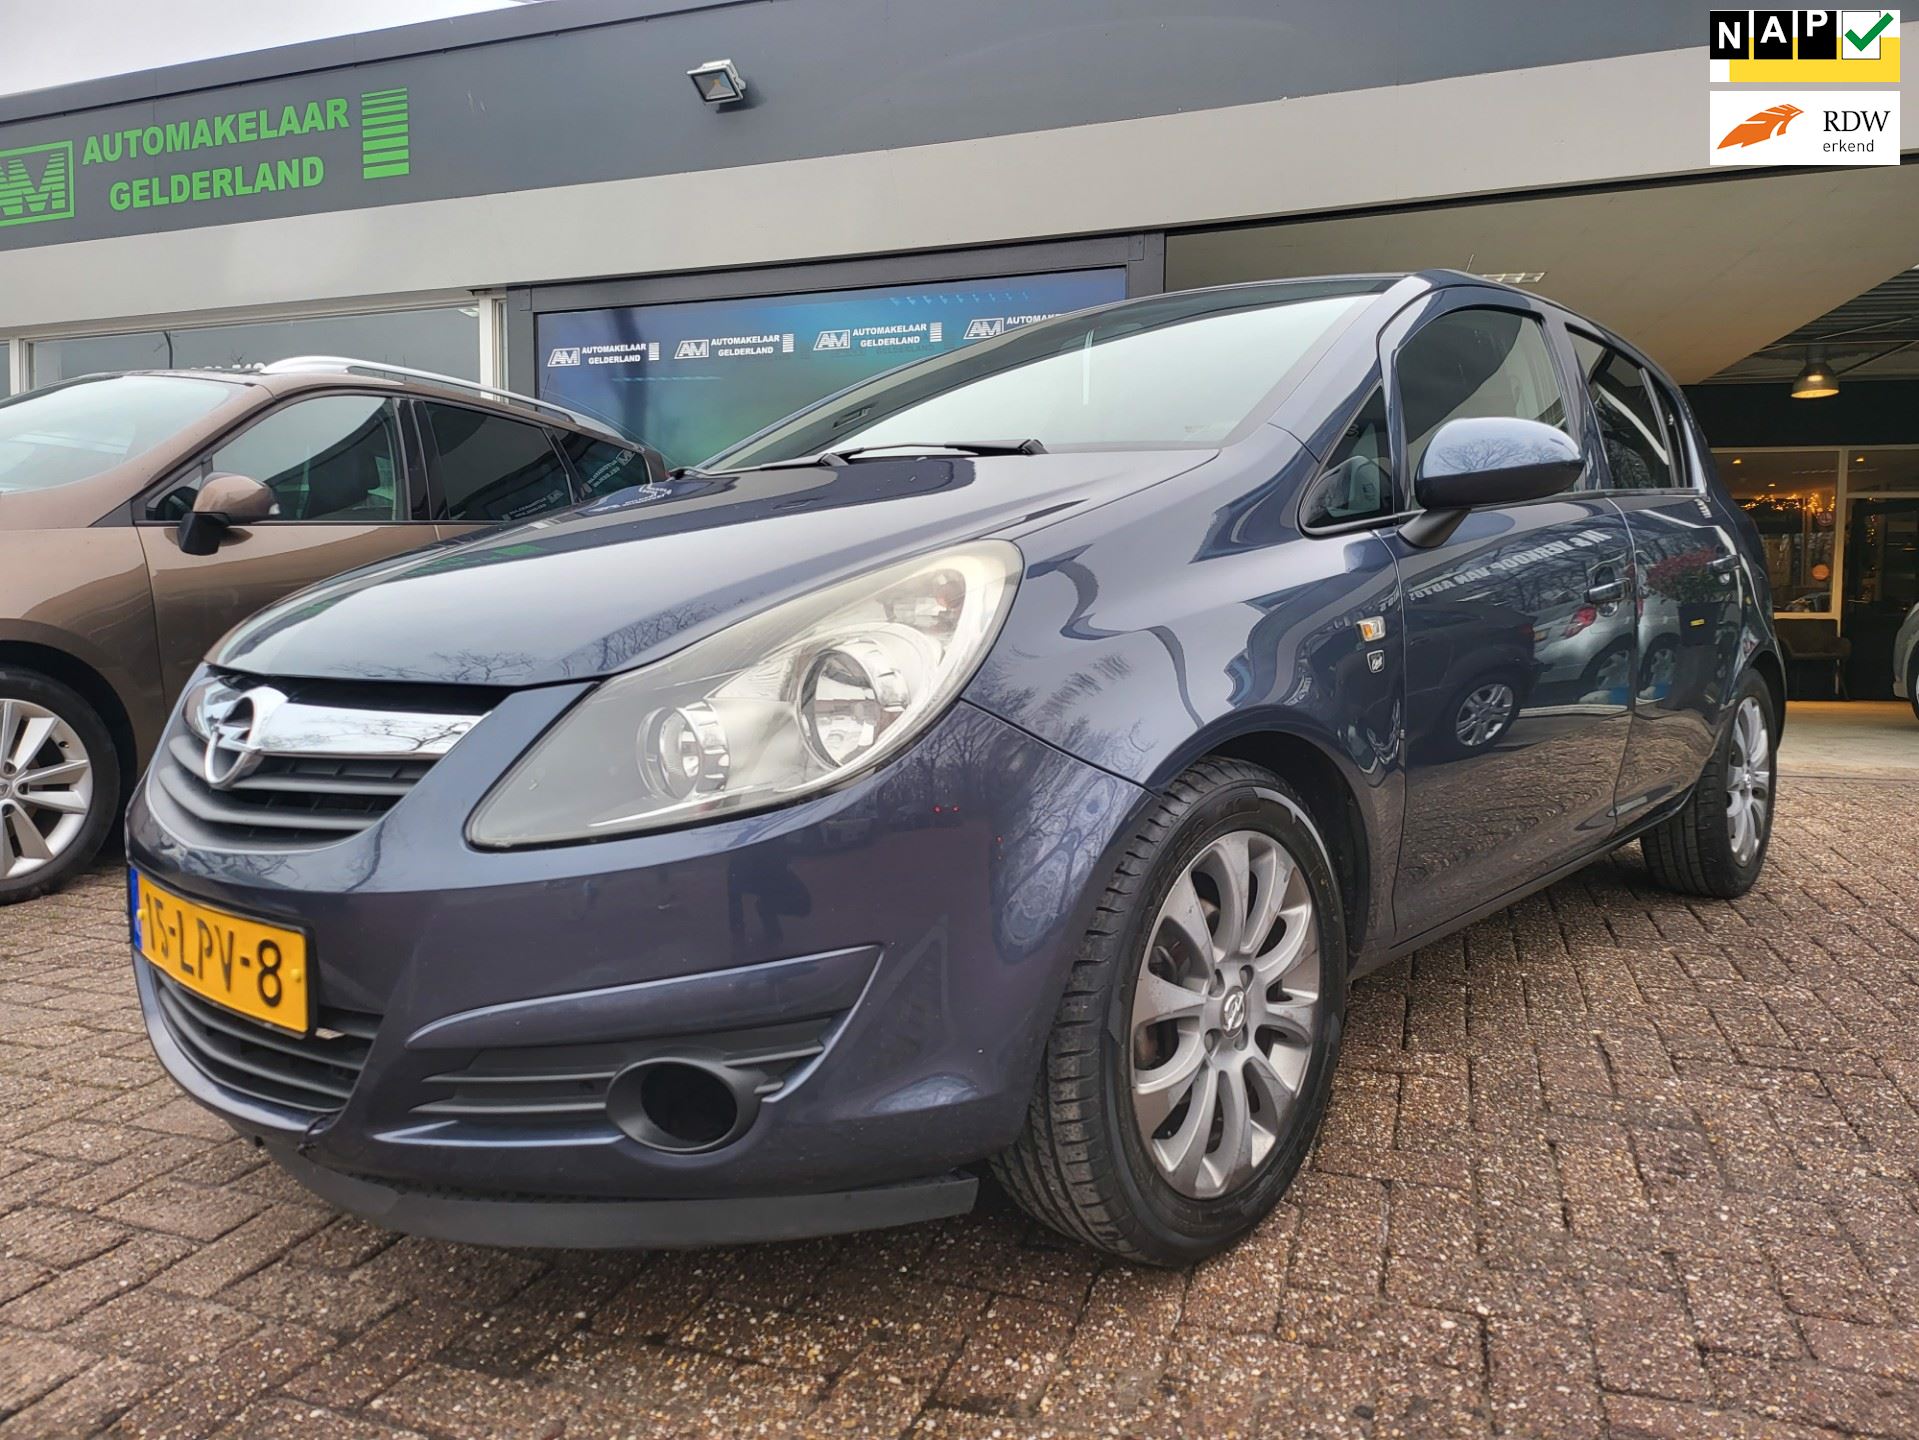 Opel Corsa occasion - De Automakelaar Gelderland